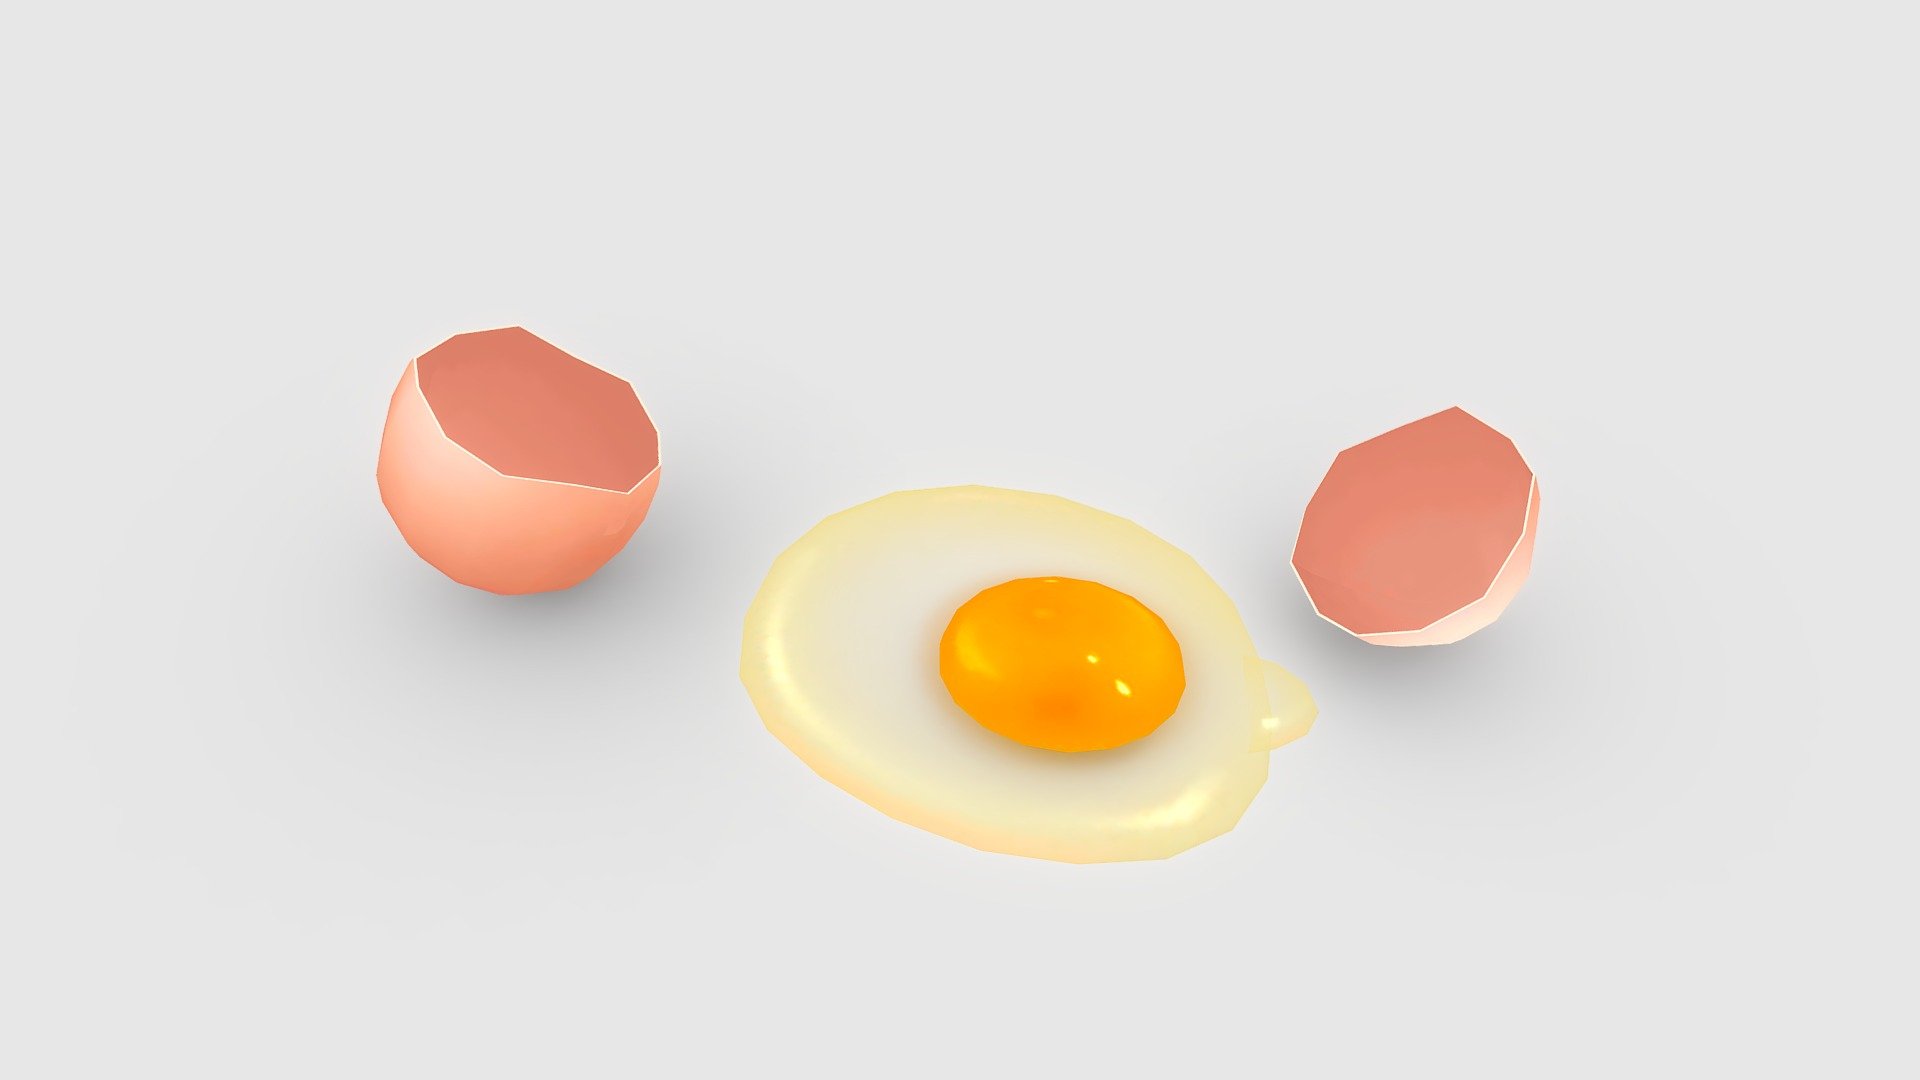 Cartoon egg liquid - egg yolk - broken egg - eggshell - Cartoon egg liquid-egg yolk-broken egg-eggshell - Buy Royalty Free 3D model by ler_cartoon (@lerrrrr) 3d model